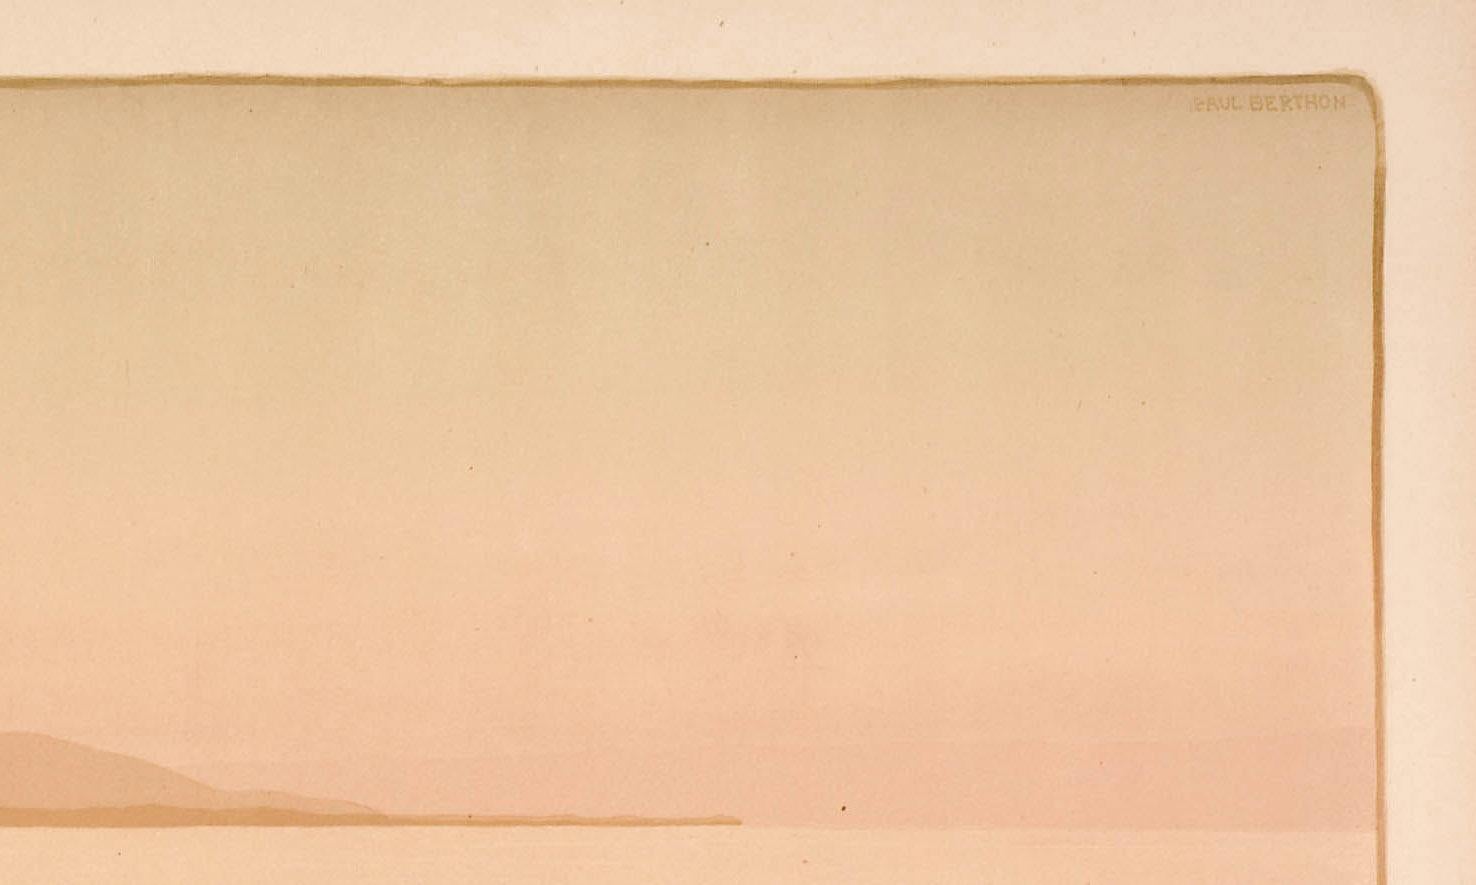 La Pointe de Bretteville
Lithographie en couleur, 1899
Signé dans la pierre en haut à droite
Éditeur : Sagot, Paris
Edition : Edition : environ 200 (par Arwas)
Références et expositions :
Arwas 33 2ème état B
Feuille : 13 1/4 X 25 5/8